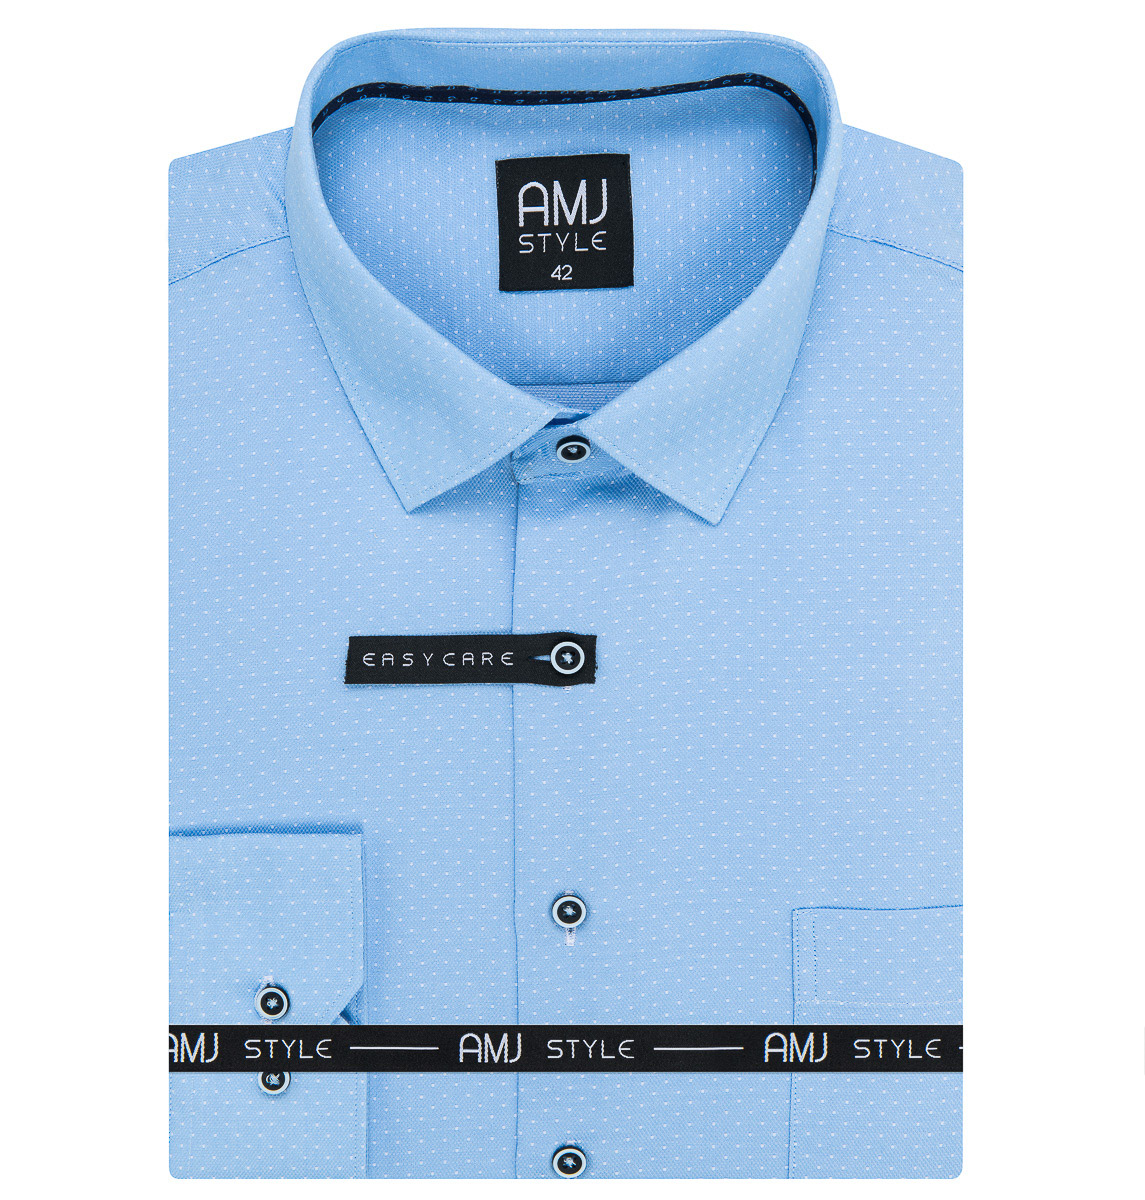 Pánská košile AMJ, modrá kostičkovaná VDR1178, dlouhý rukáv (regular + slim-fit)